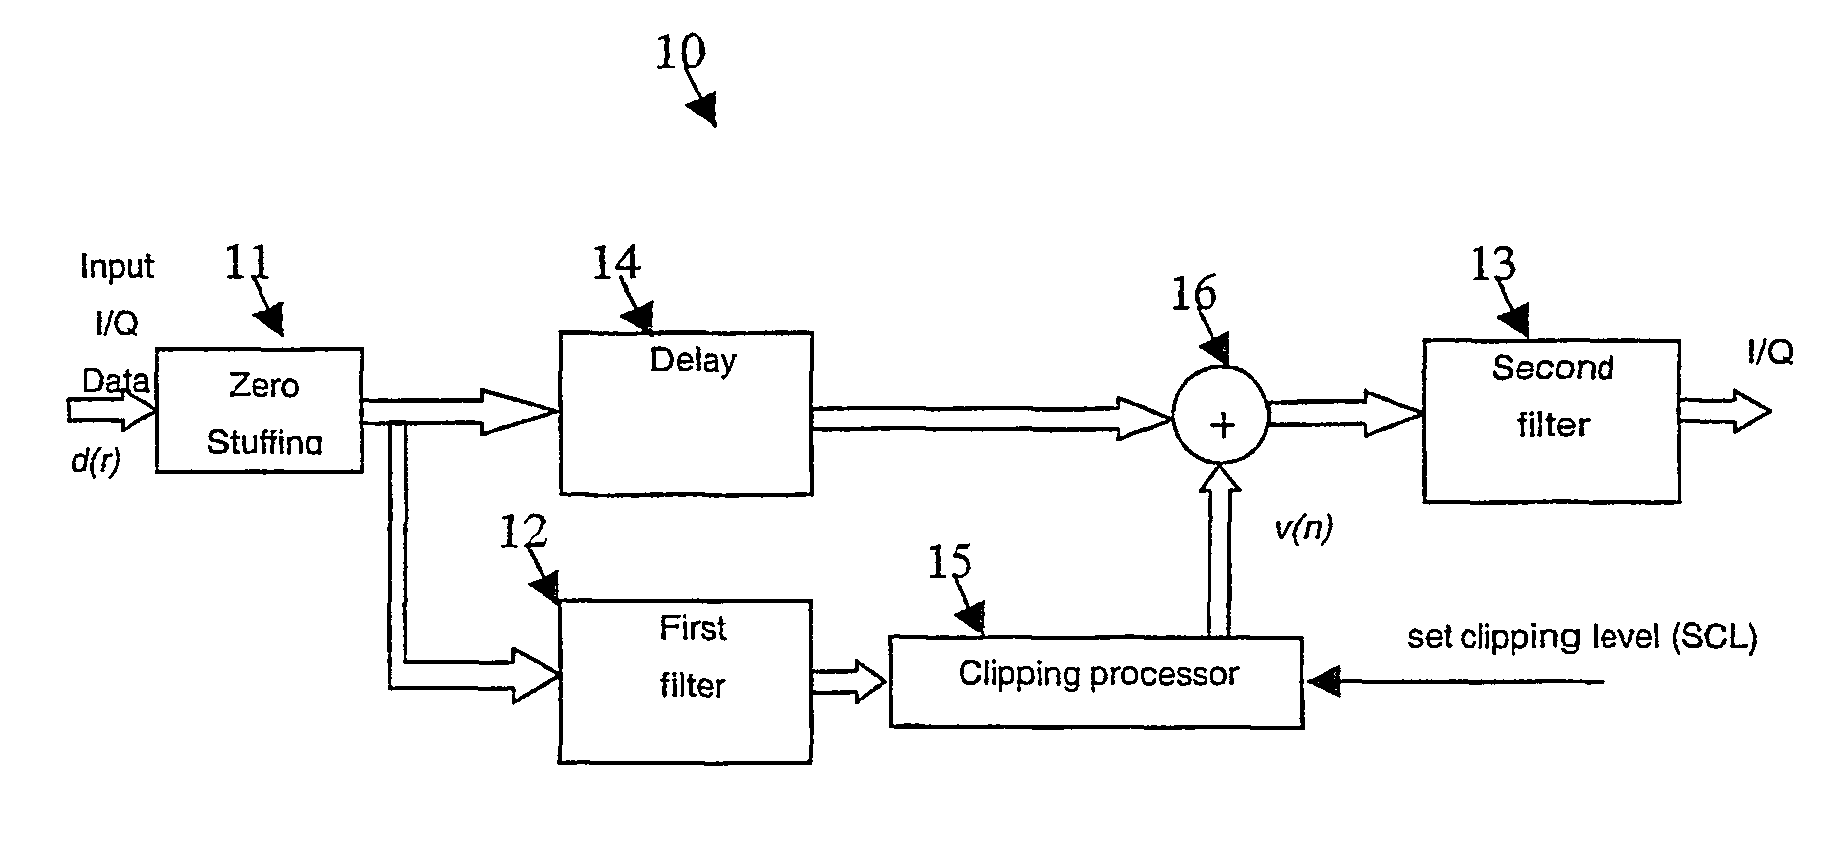 Signal peak reduction circuit for non-constant envelope modulation signals